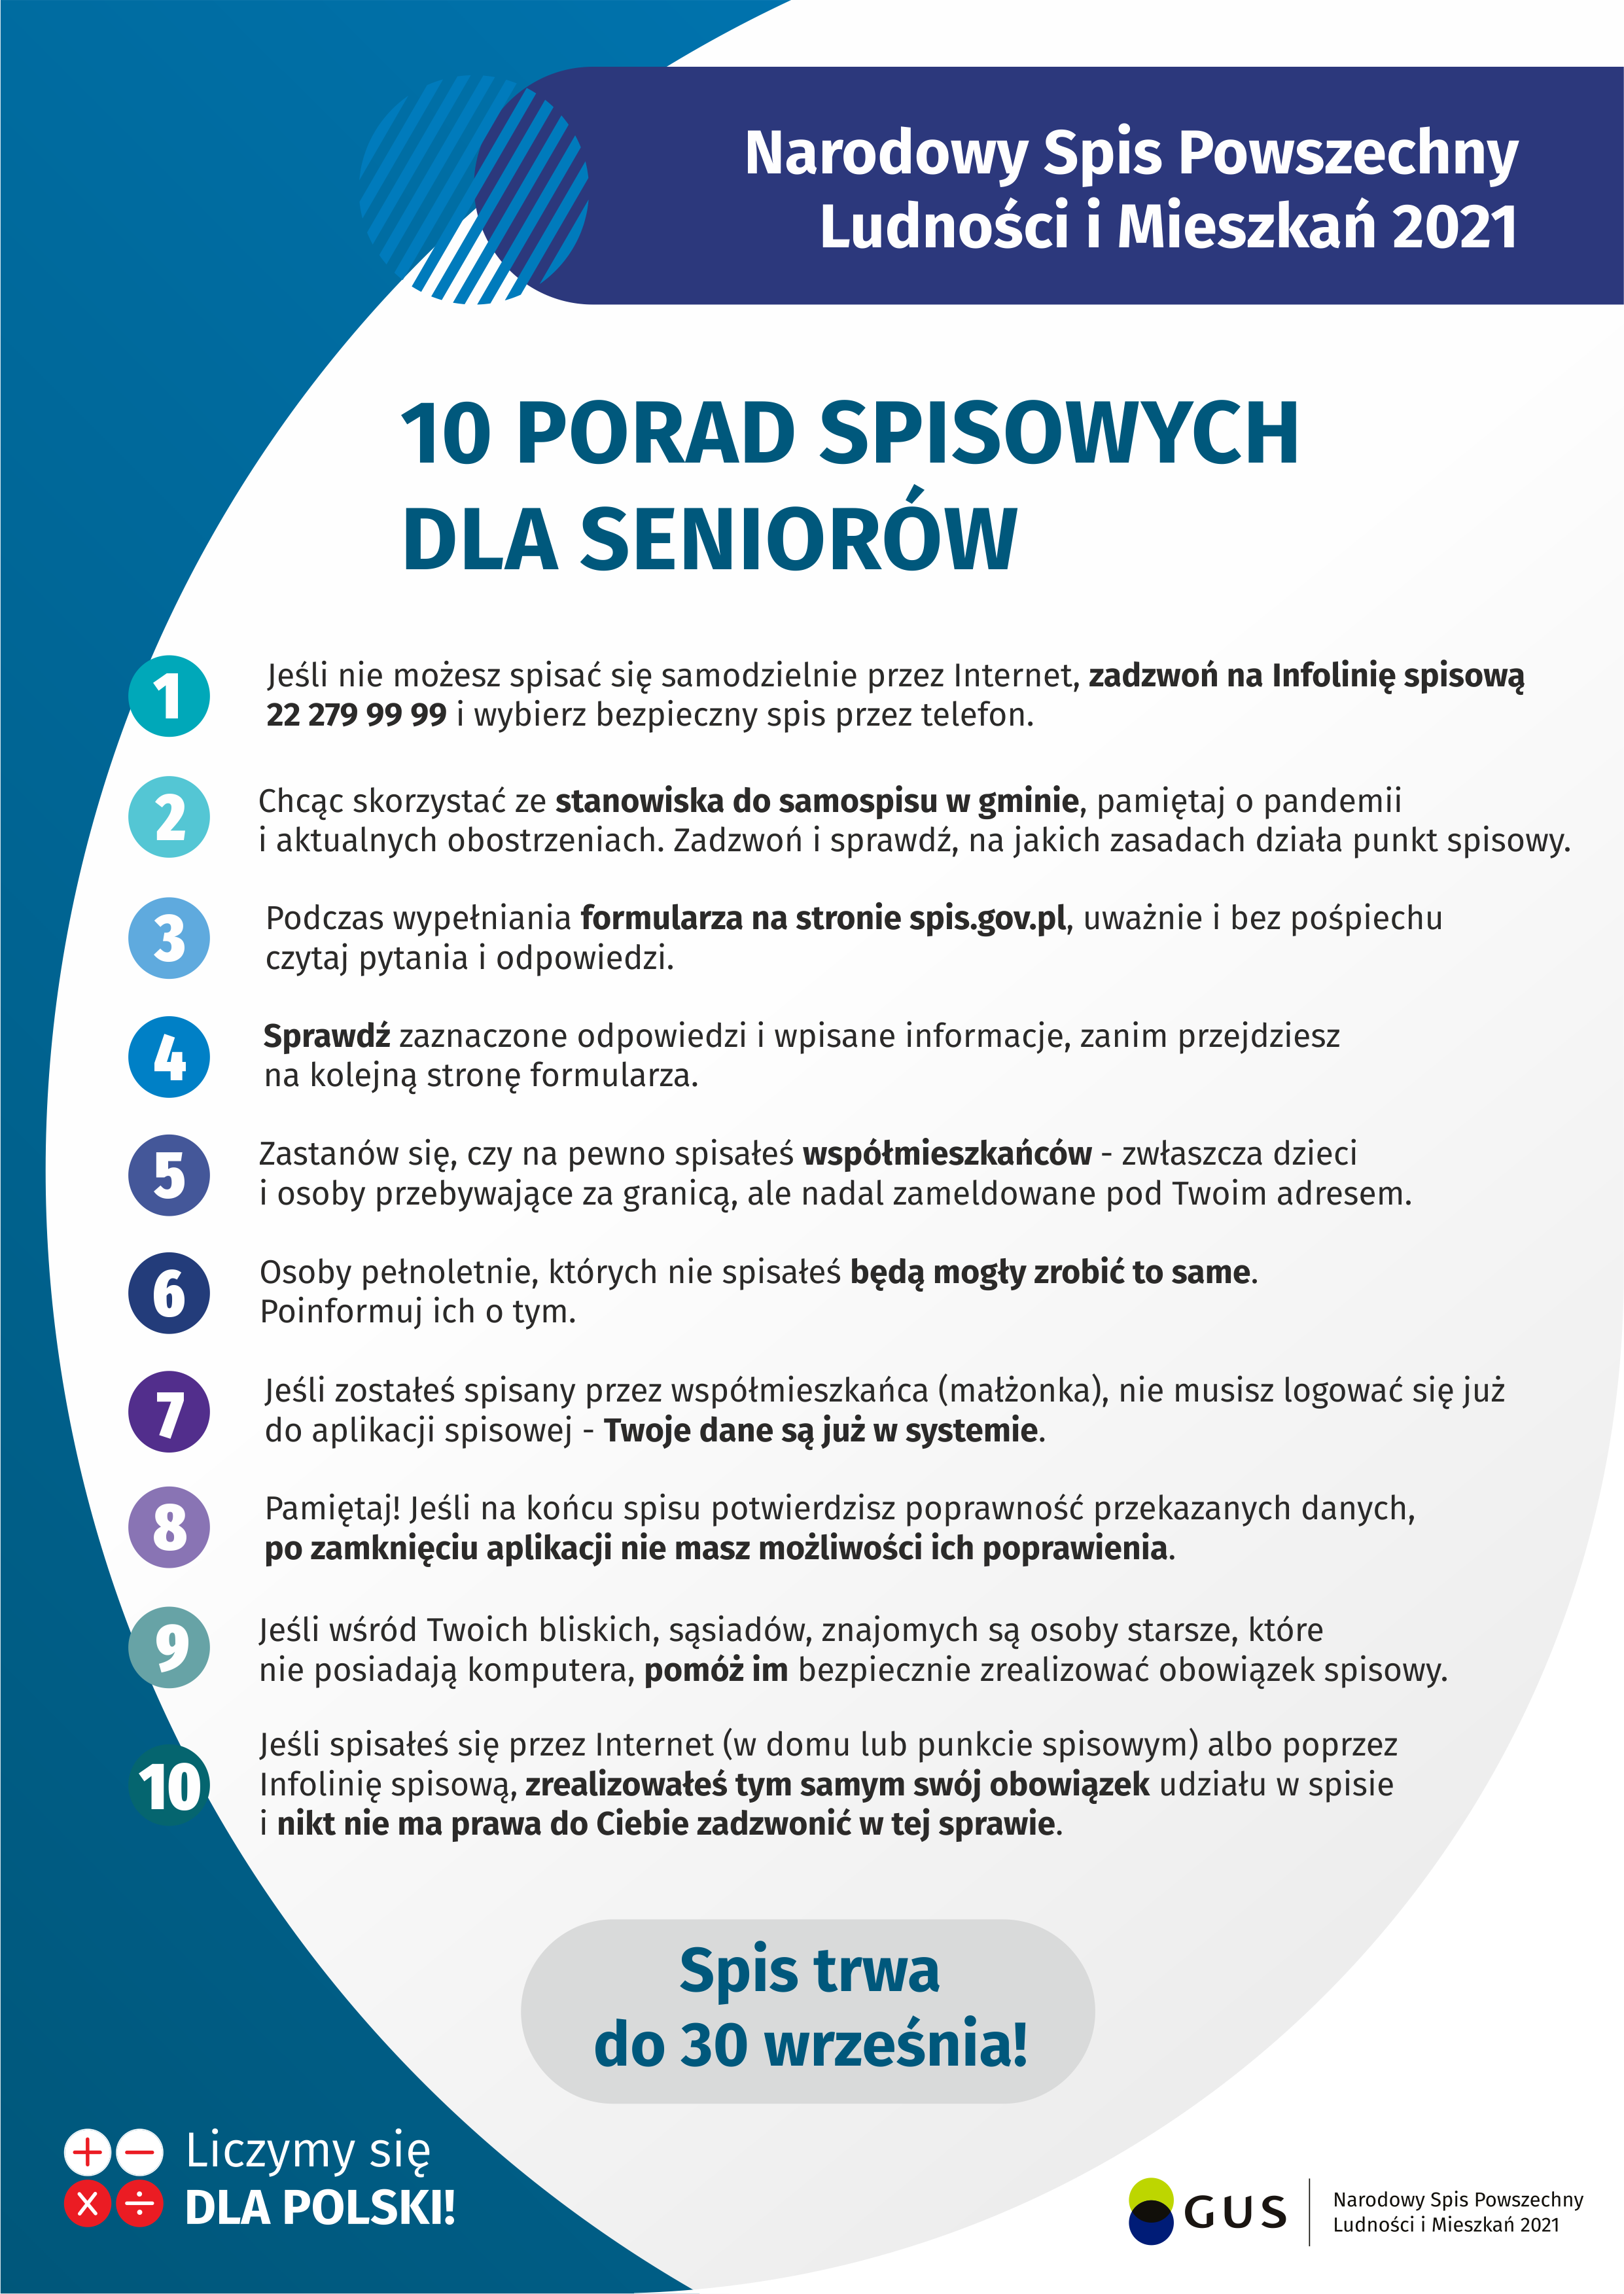 Plakat NSP 2021 opisujący 10 porad spisowych dla seniorów.